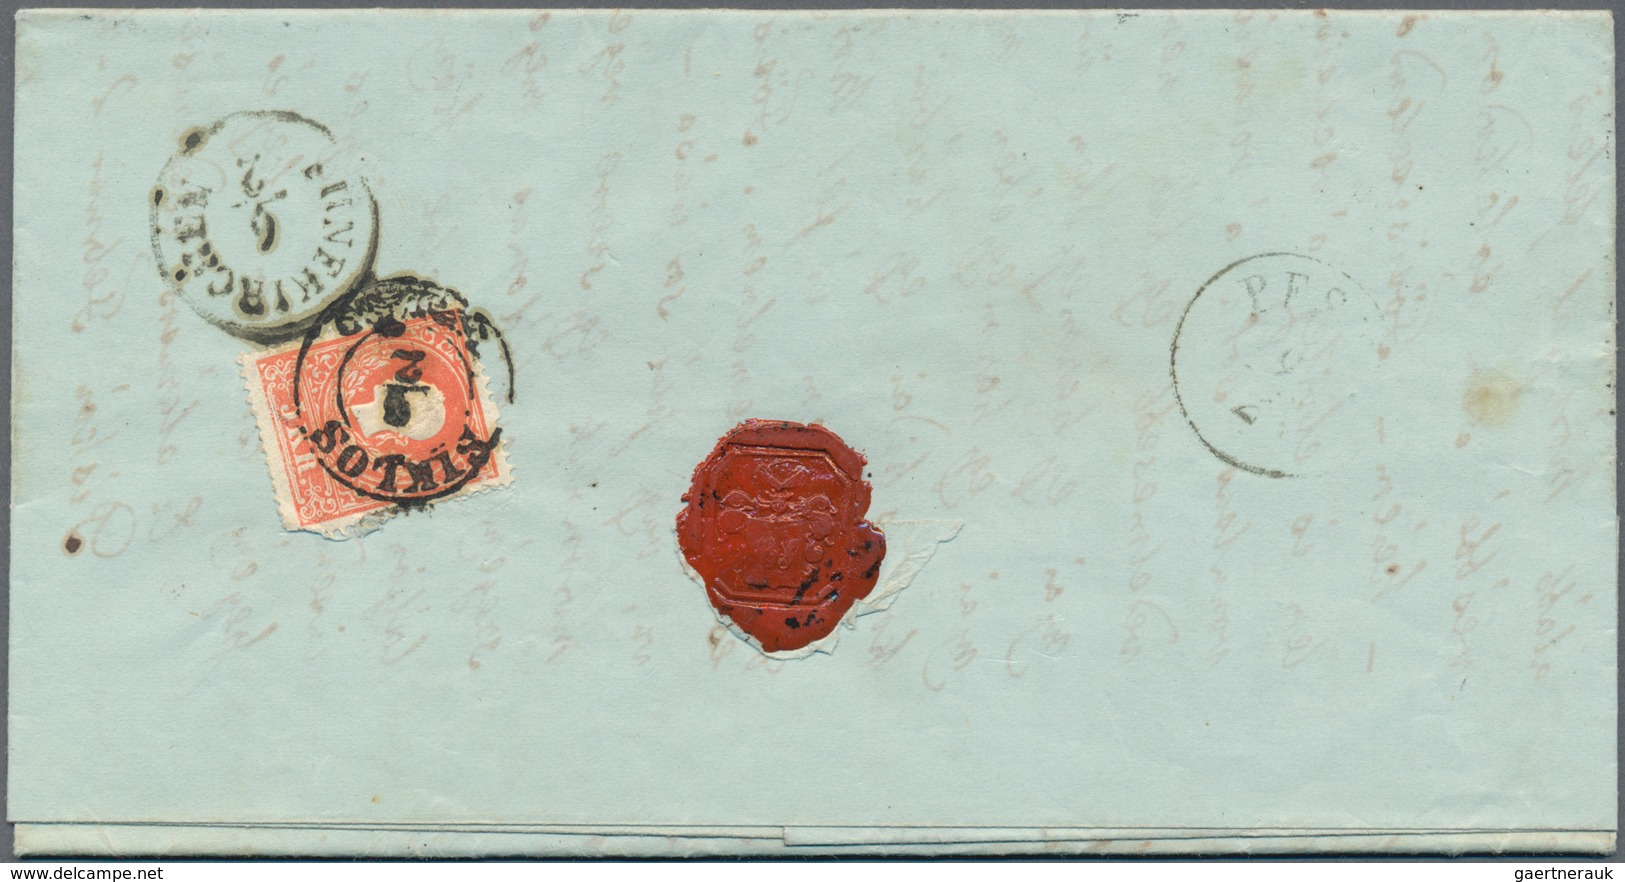 Österreich: 1859, Recommandierter Brief Von SIKLOS (Stempel Mit Zierstücken) Adressiert Nach Nagy Kö - Oblitérés